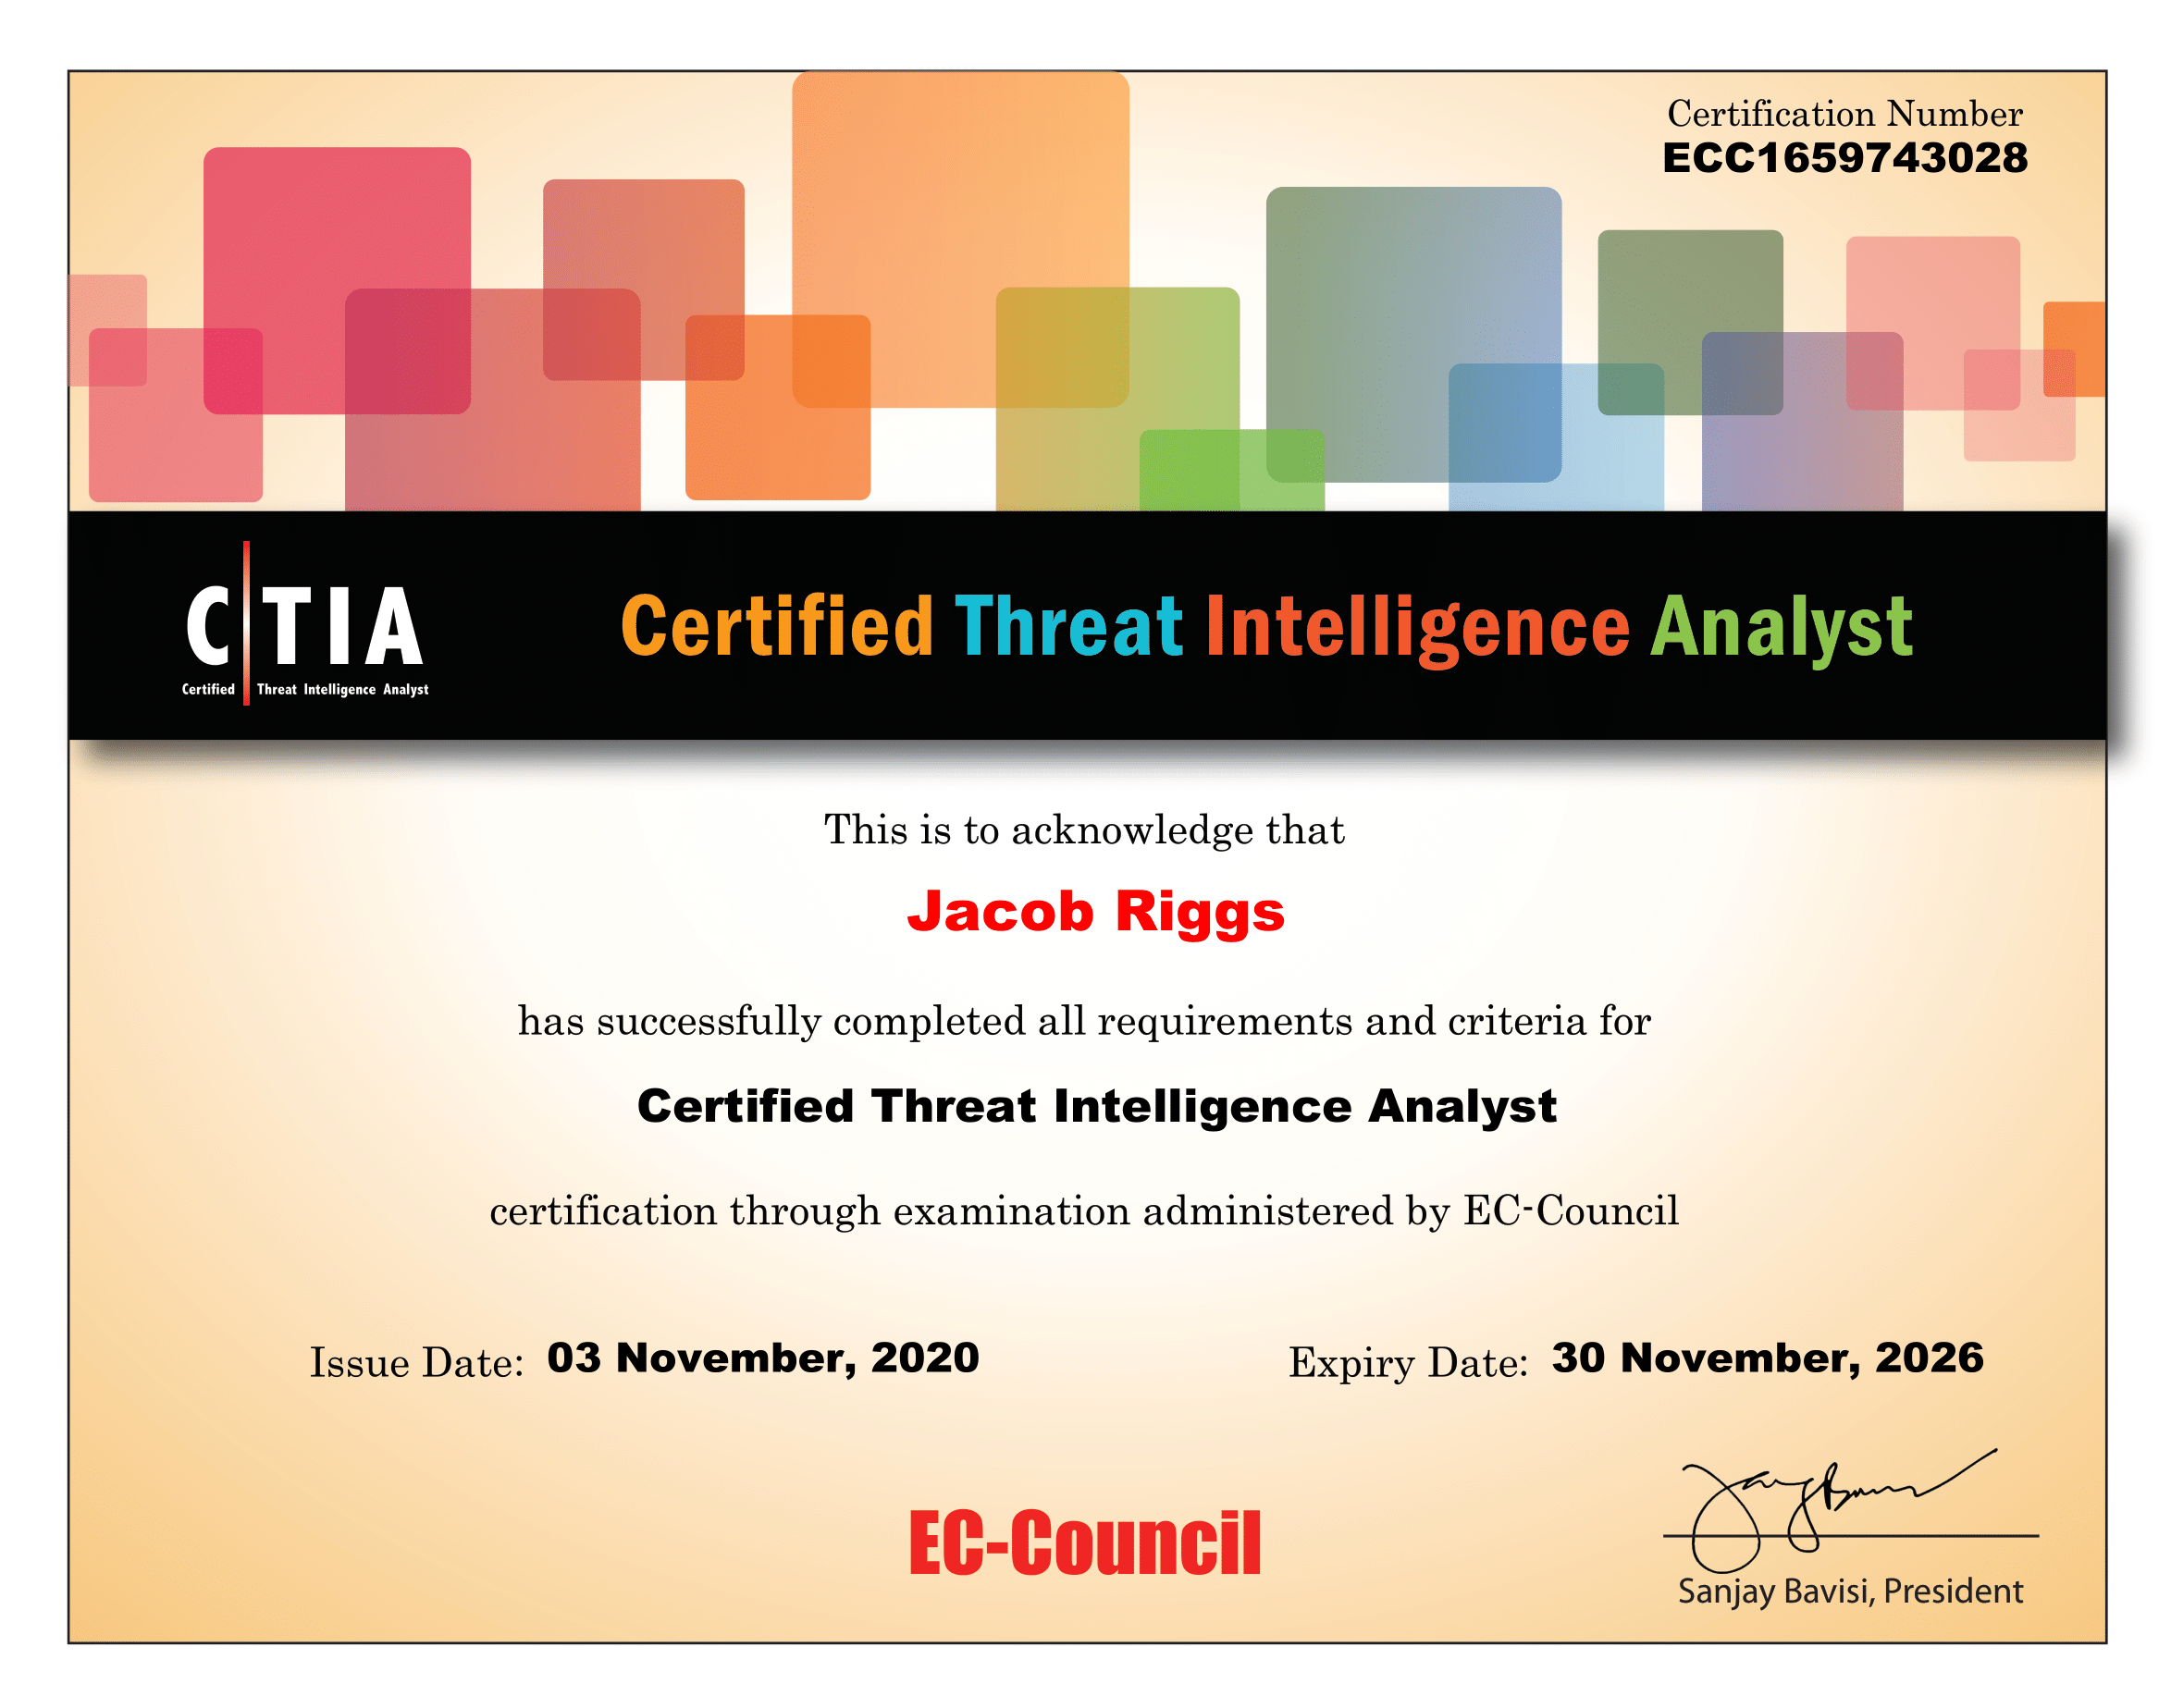 CTIA Certificate